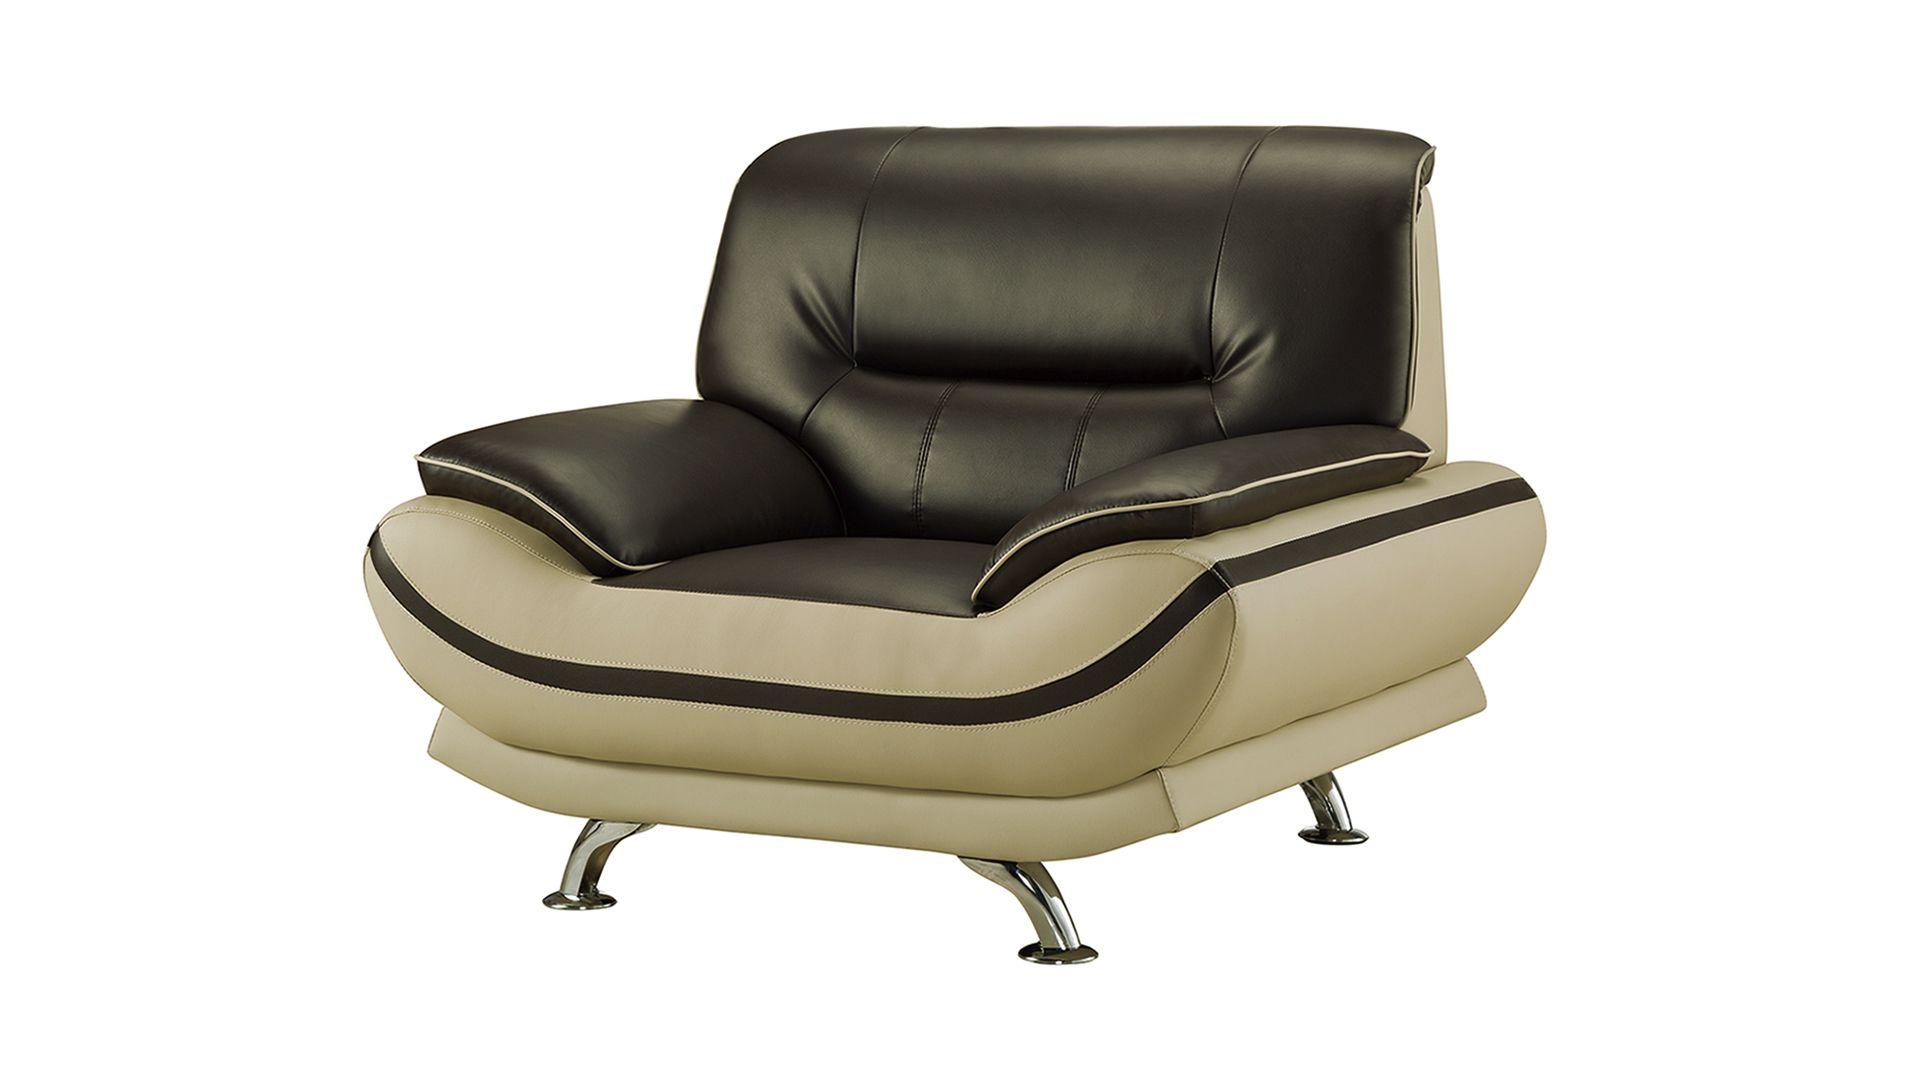 

    
AE709-MA.LG-3PC American Eagle Furniture Sofa Set
